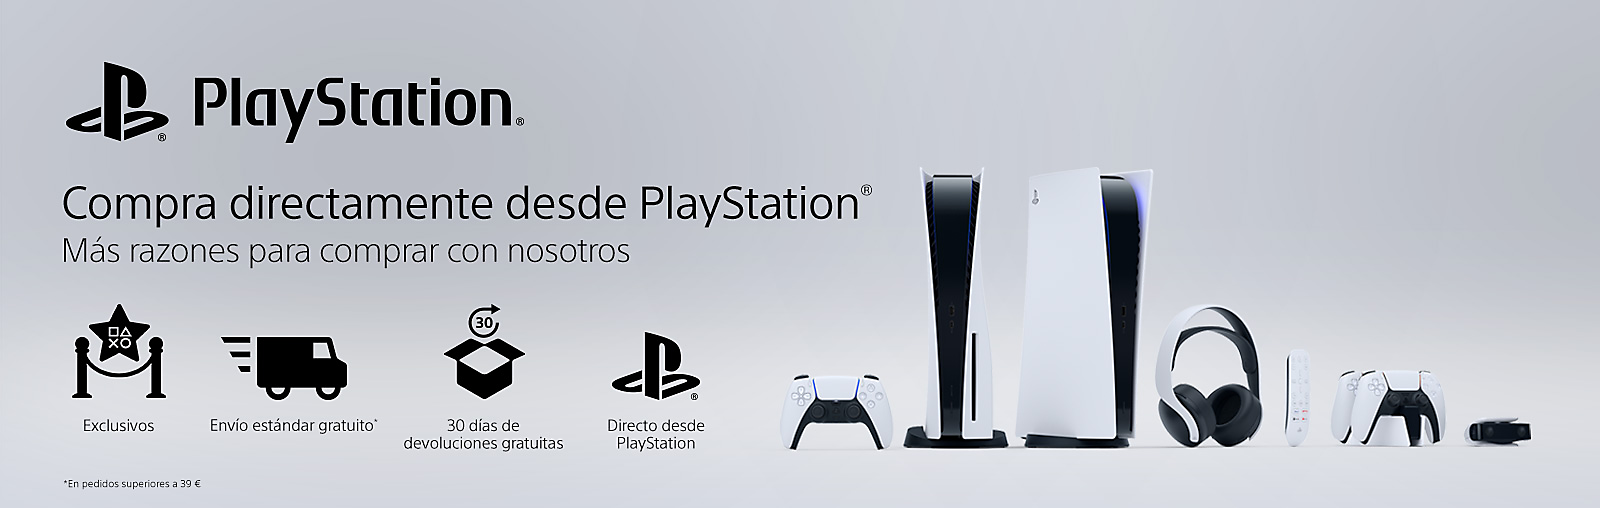 PlayStation Direct abre en España